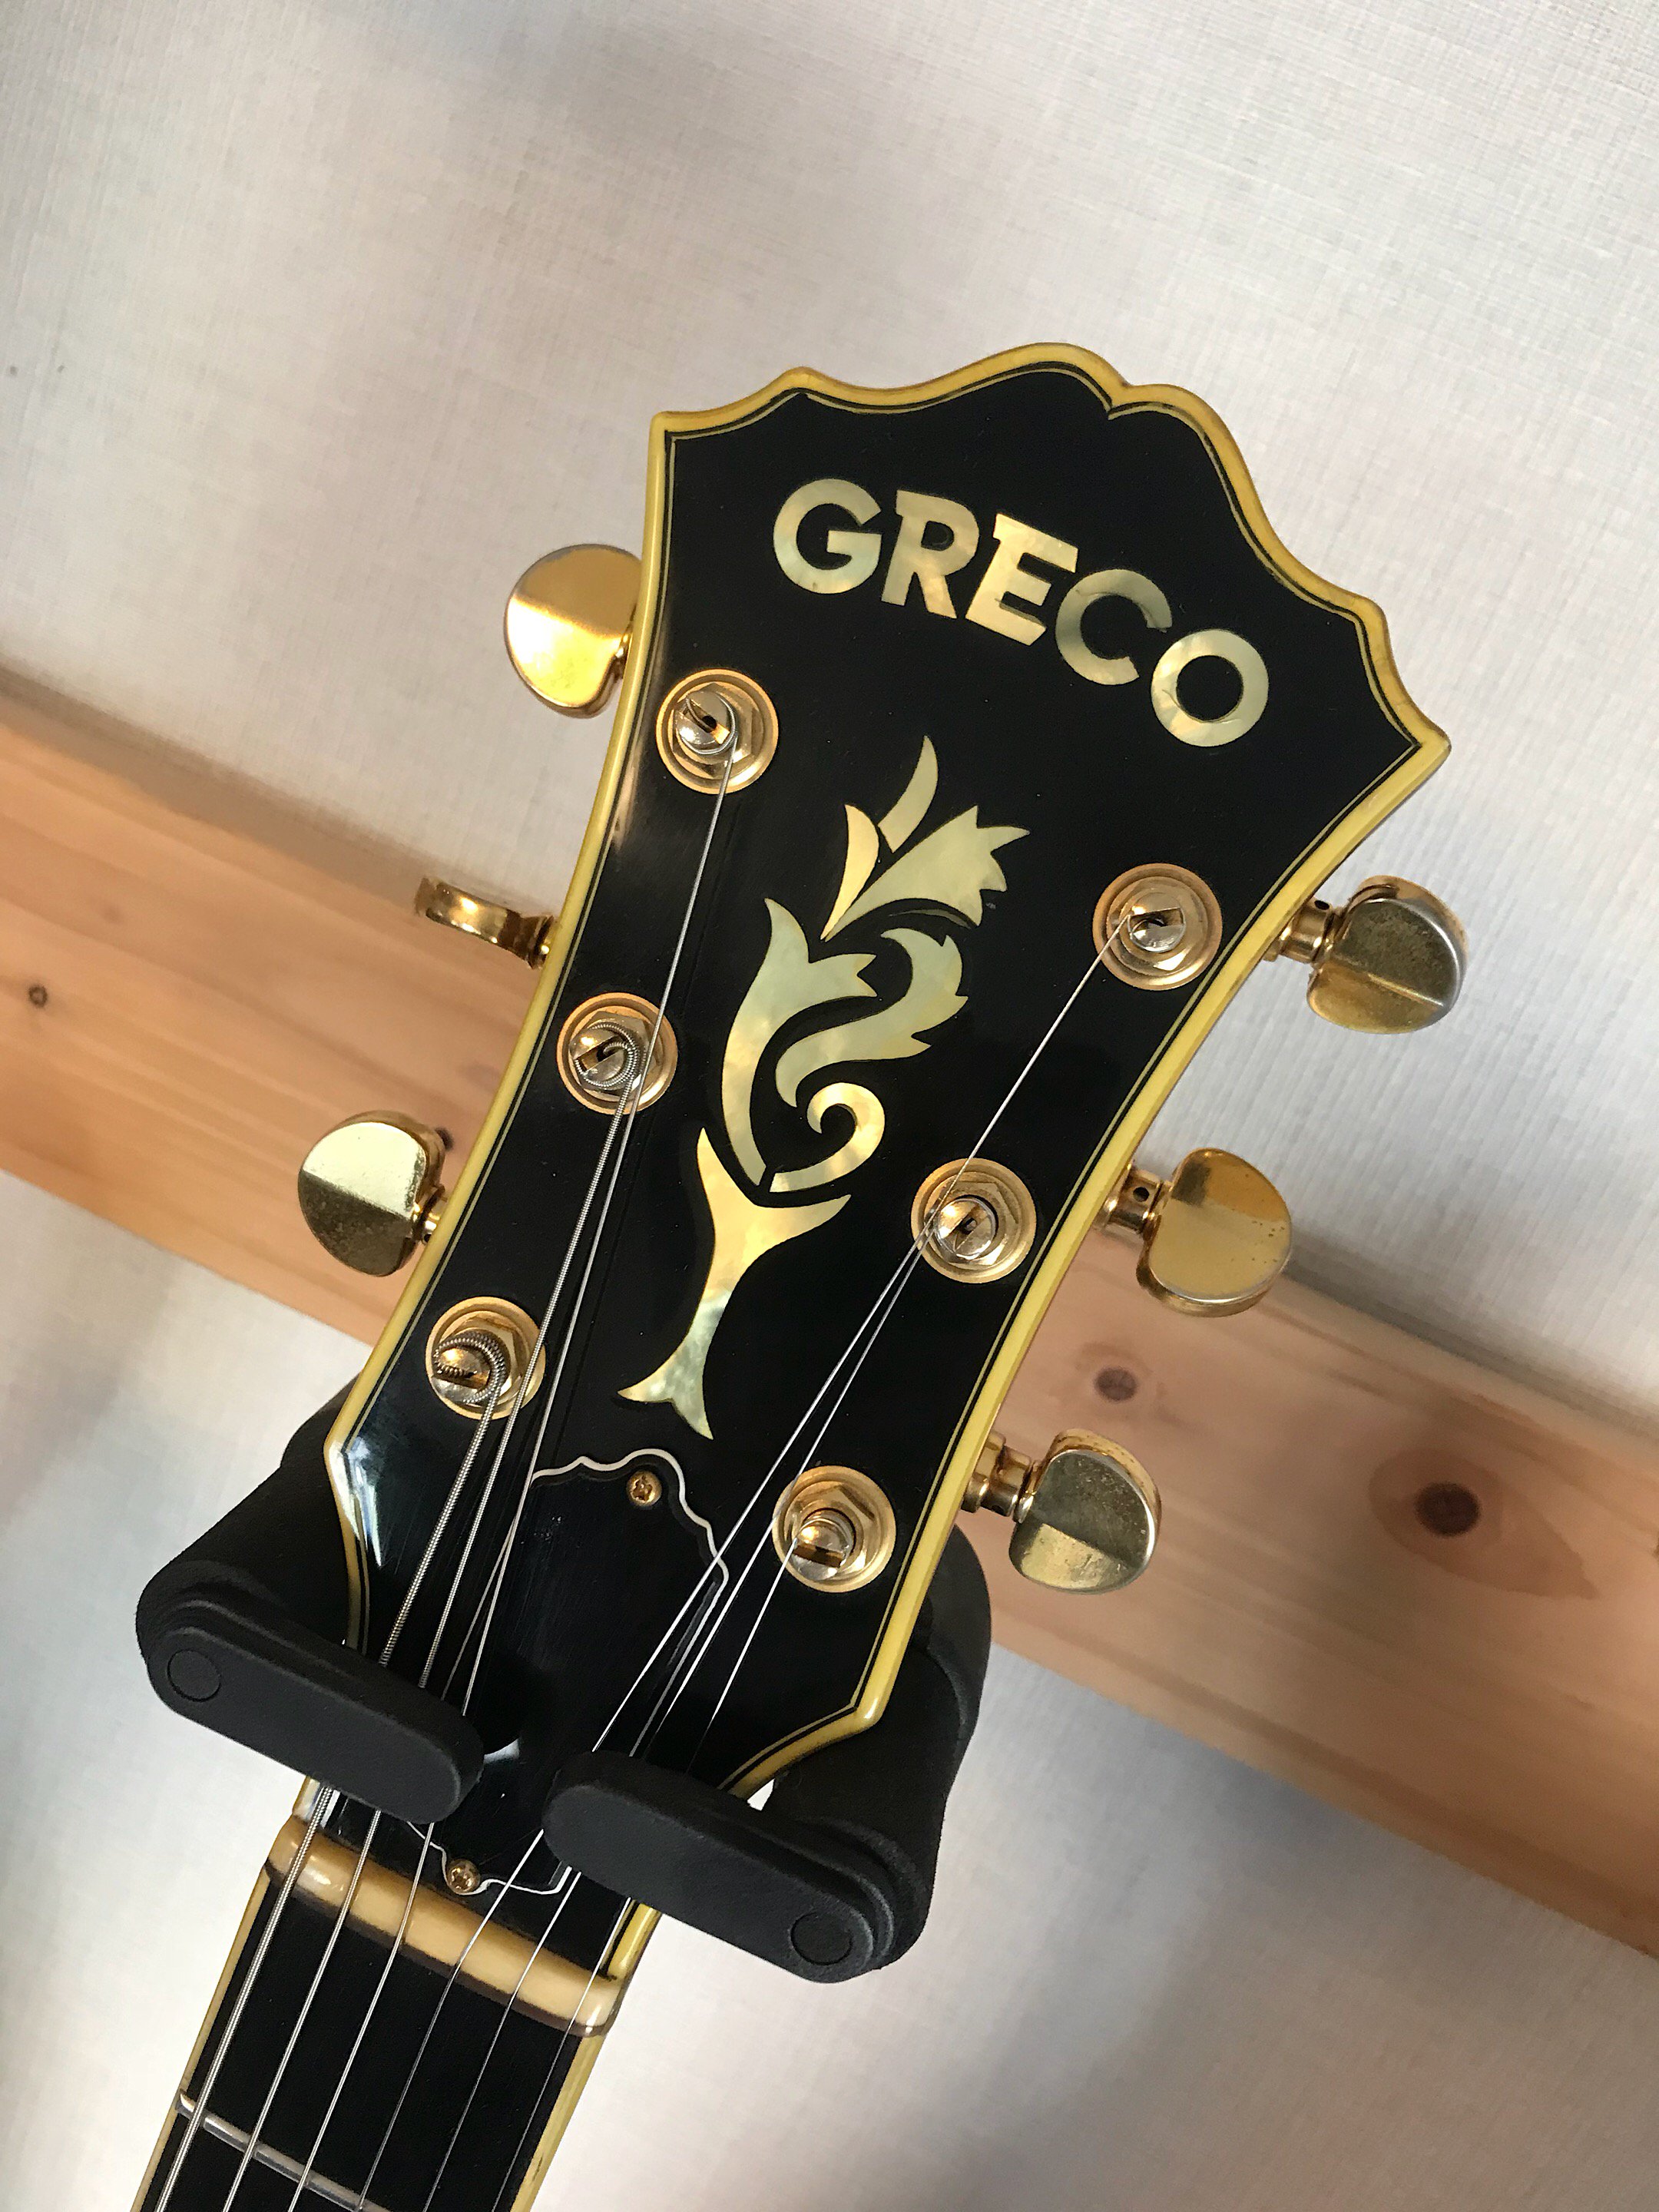 GRECO SW-1200 79年製、グレコ黄金期のレアなフルアコSW-1200です！ - ギター買取 東京 - ギターのじゃべらぼう